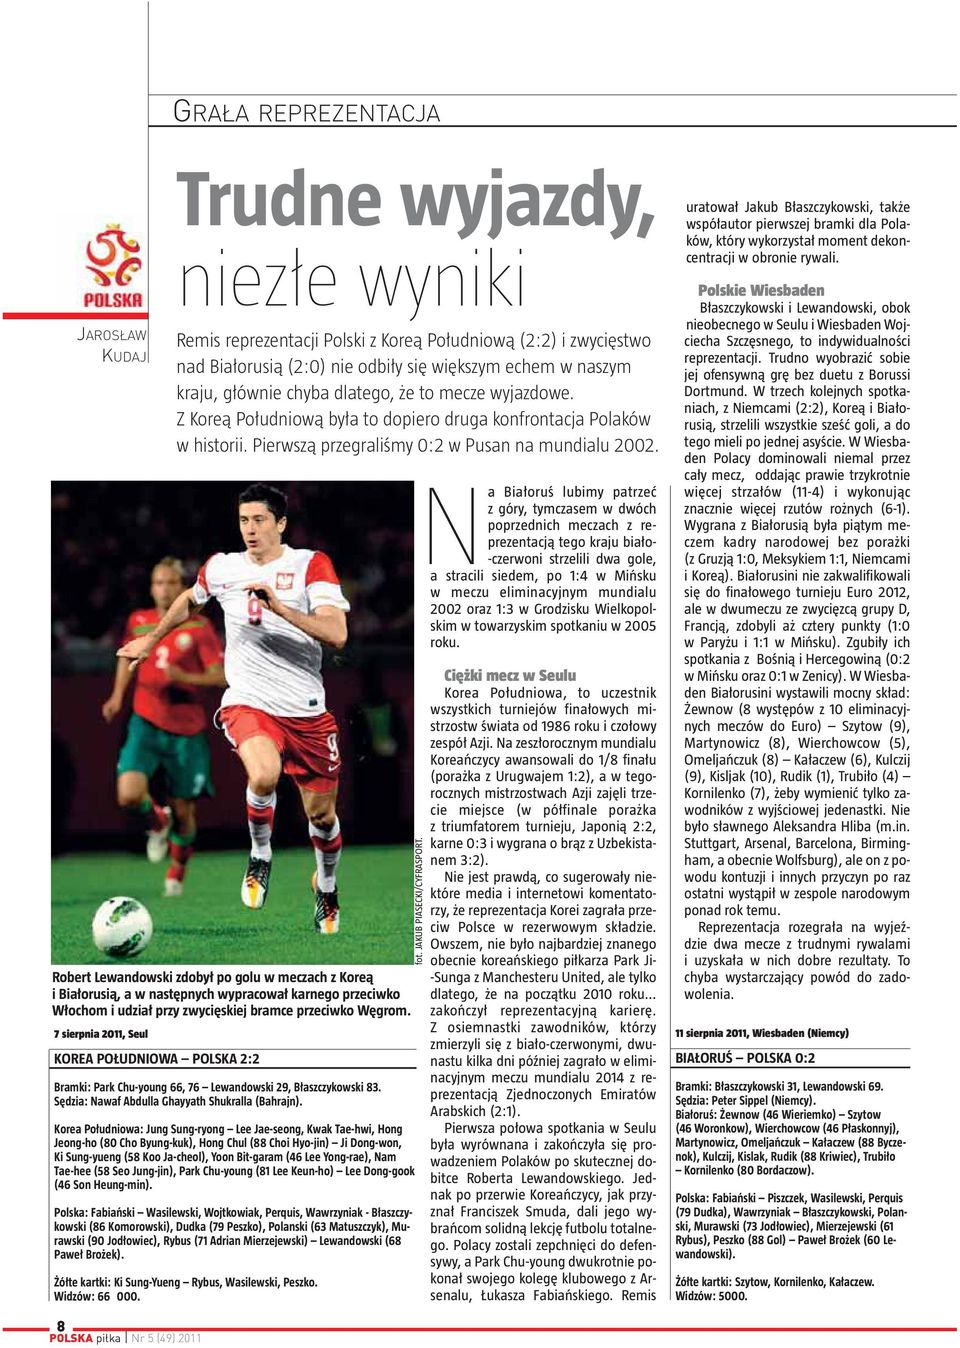 Robert Lewandowski zdobył po golu w meczach z Koreą i Białorusią, a w następnych wypracował karnego przeciwko Włochom i udział przy zwycięskiej bramce przeciwko Węgrom.